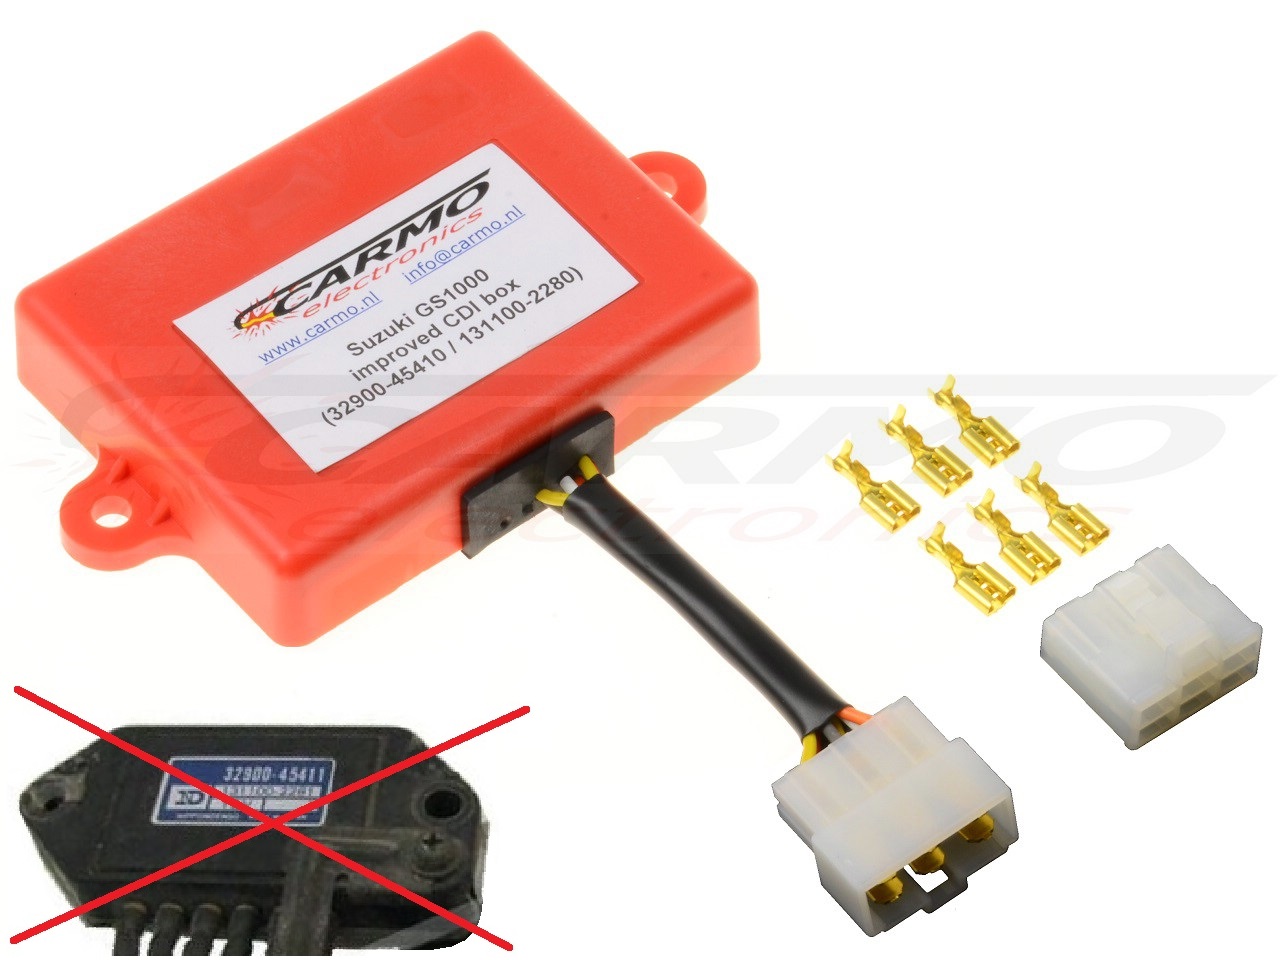 Suzuki GS750 GS850 GS1000 GS1100 igniter ignition module CDI TCI Box (32900-45410 / 45411, 32900-45110 / 45120) - Clique na Imagem para Fechar